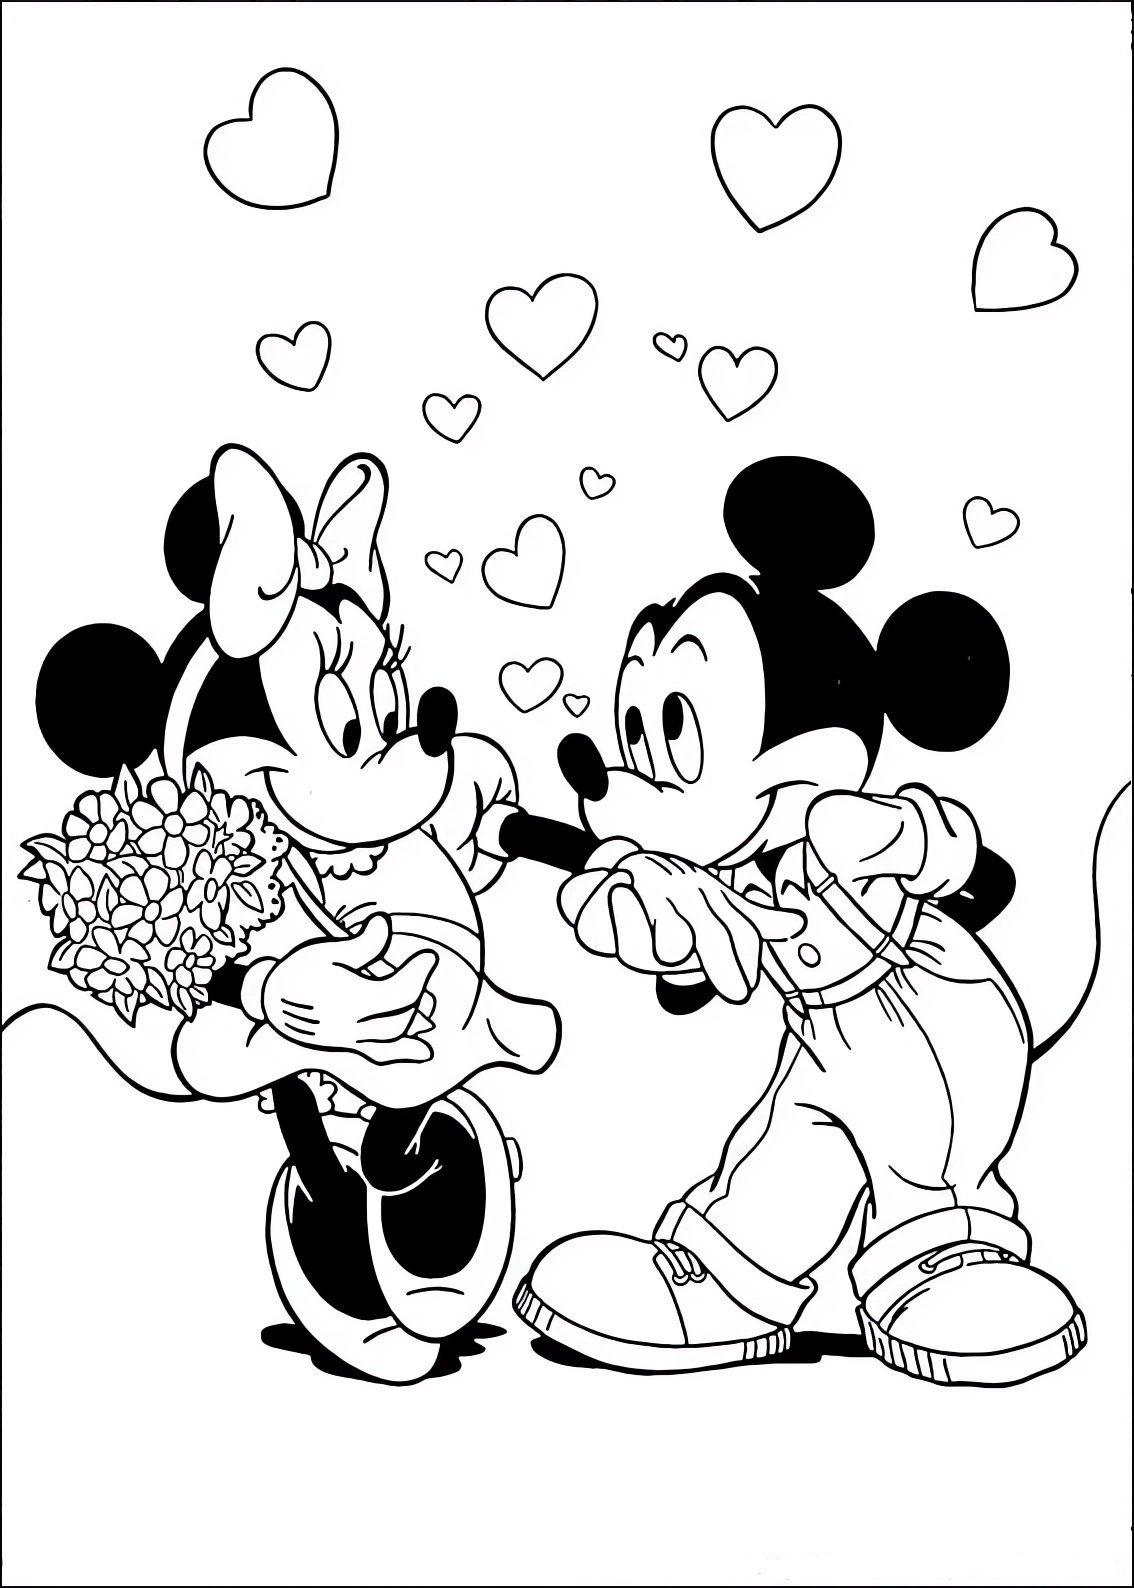 Malvorlage von Minnie und Mickey Mouse (Mickey Mouse), verliebt in einen Blumenstrauß